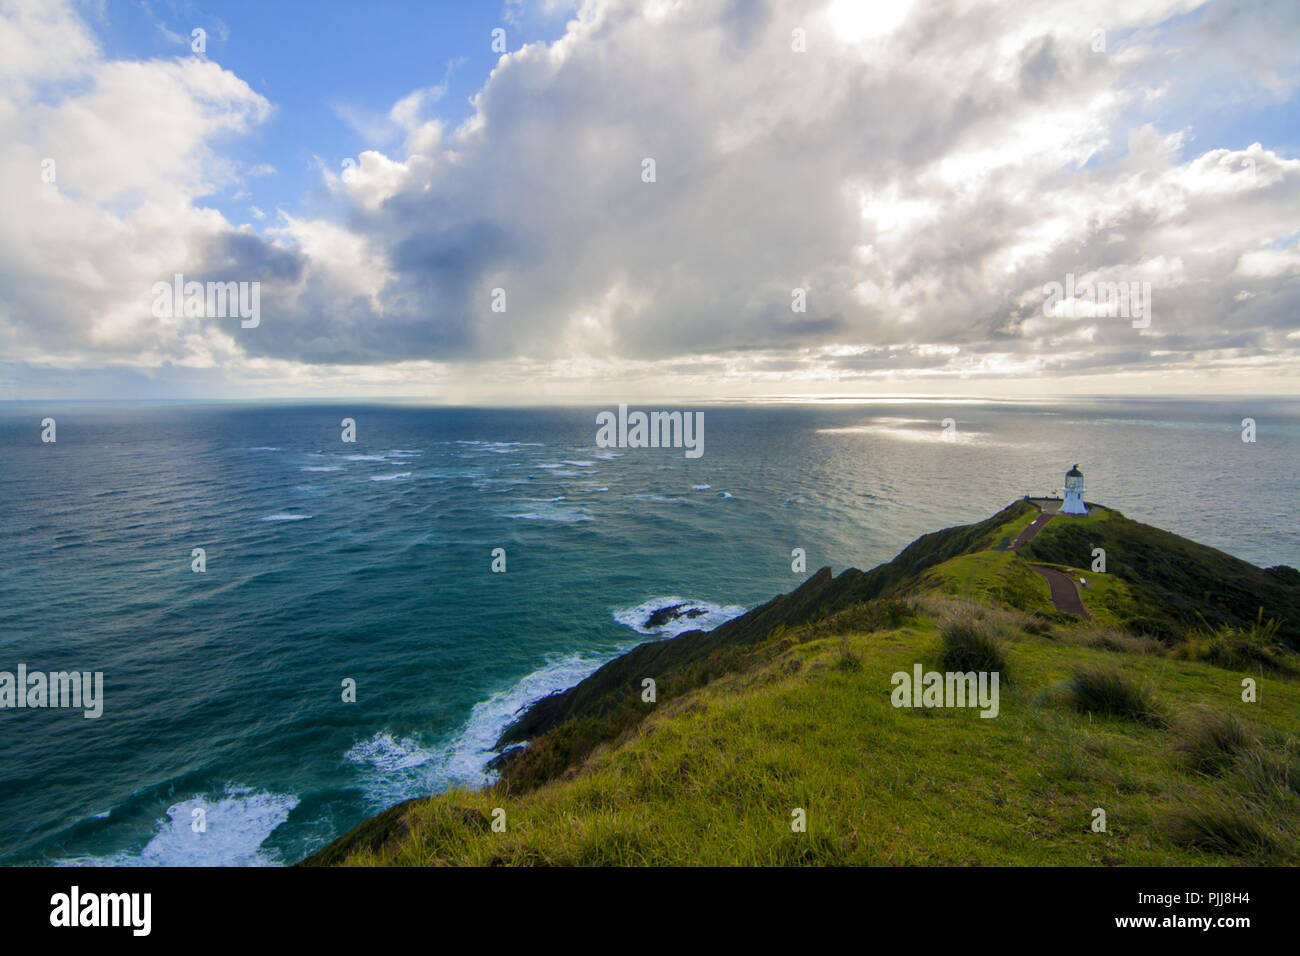 Incredibile vista panoramica del paesaggio marino con il faro sulla sommità della collina, Oceano Pacifico meridionale, Cape Reinga Lighthouse bella illuminazione sun Foto Stock